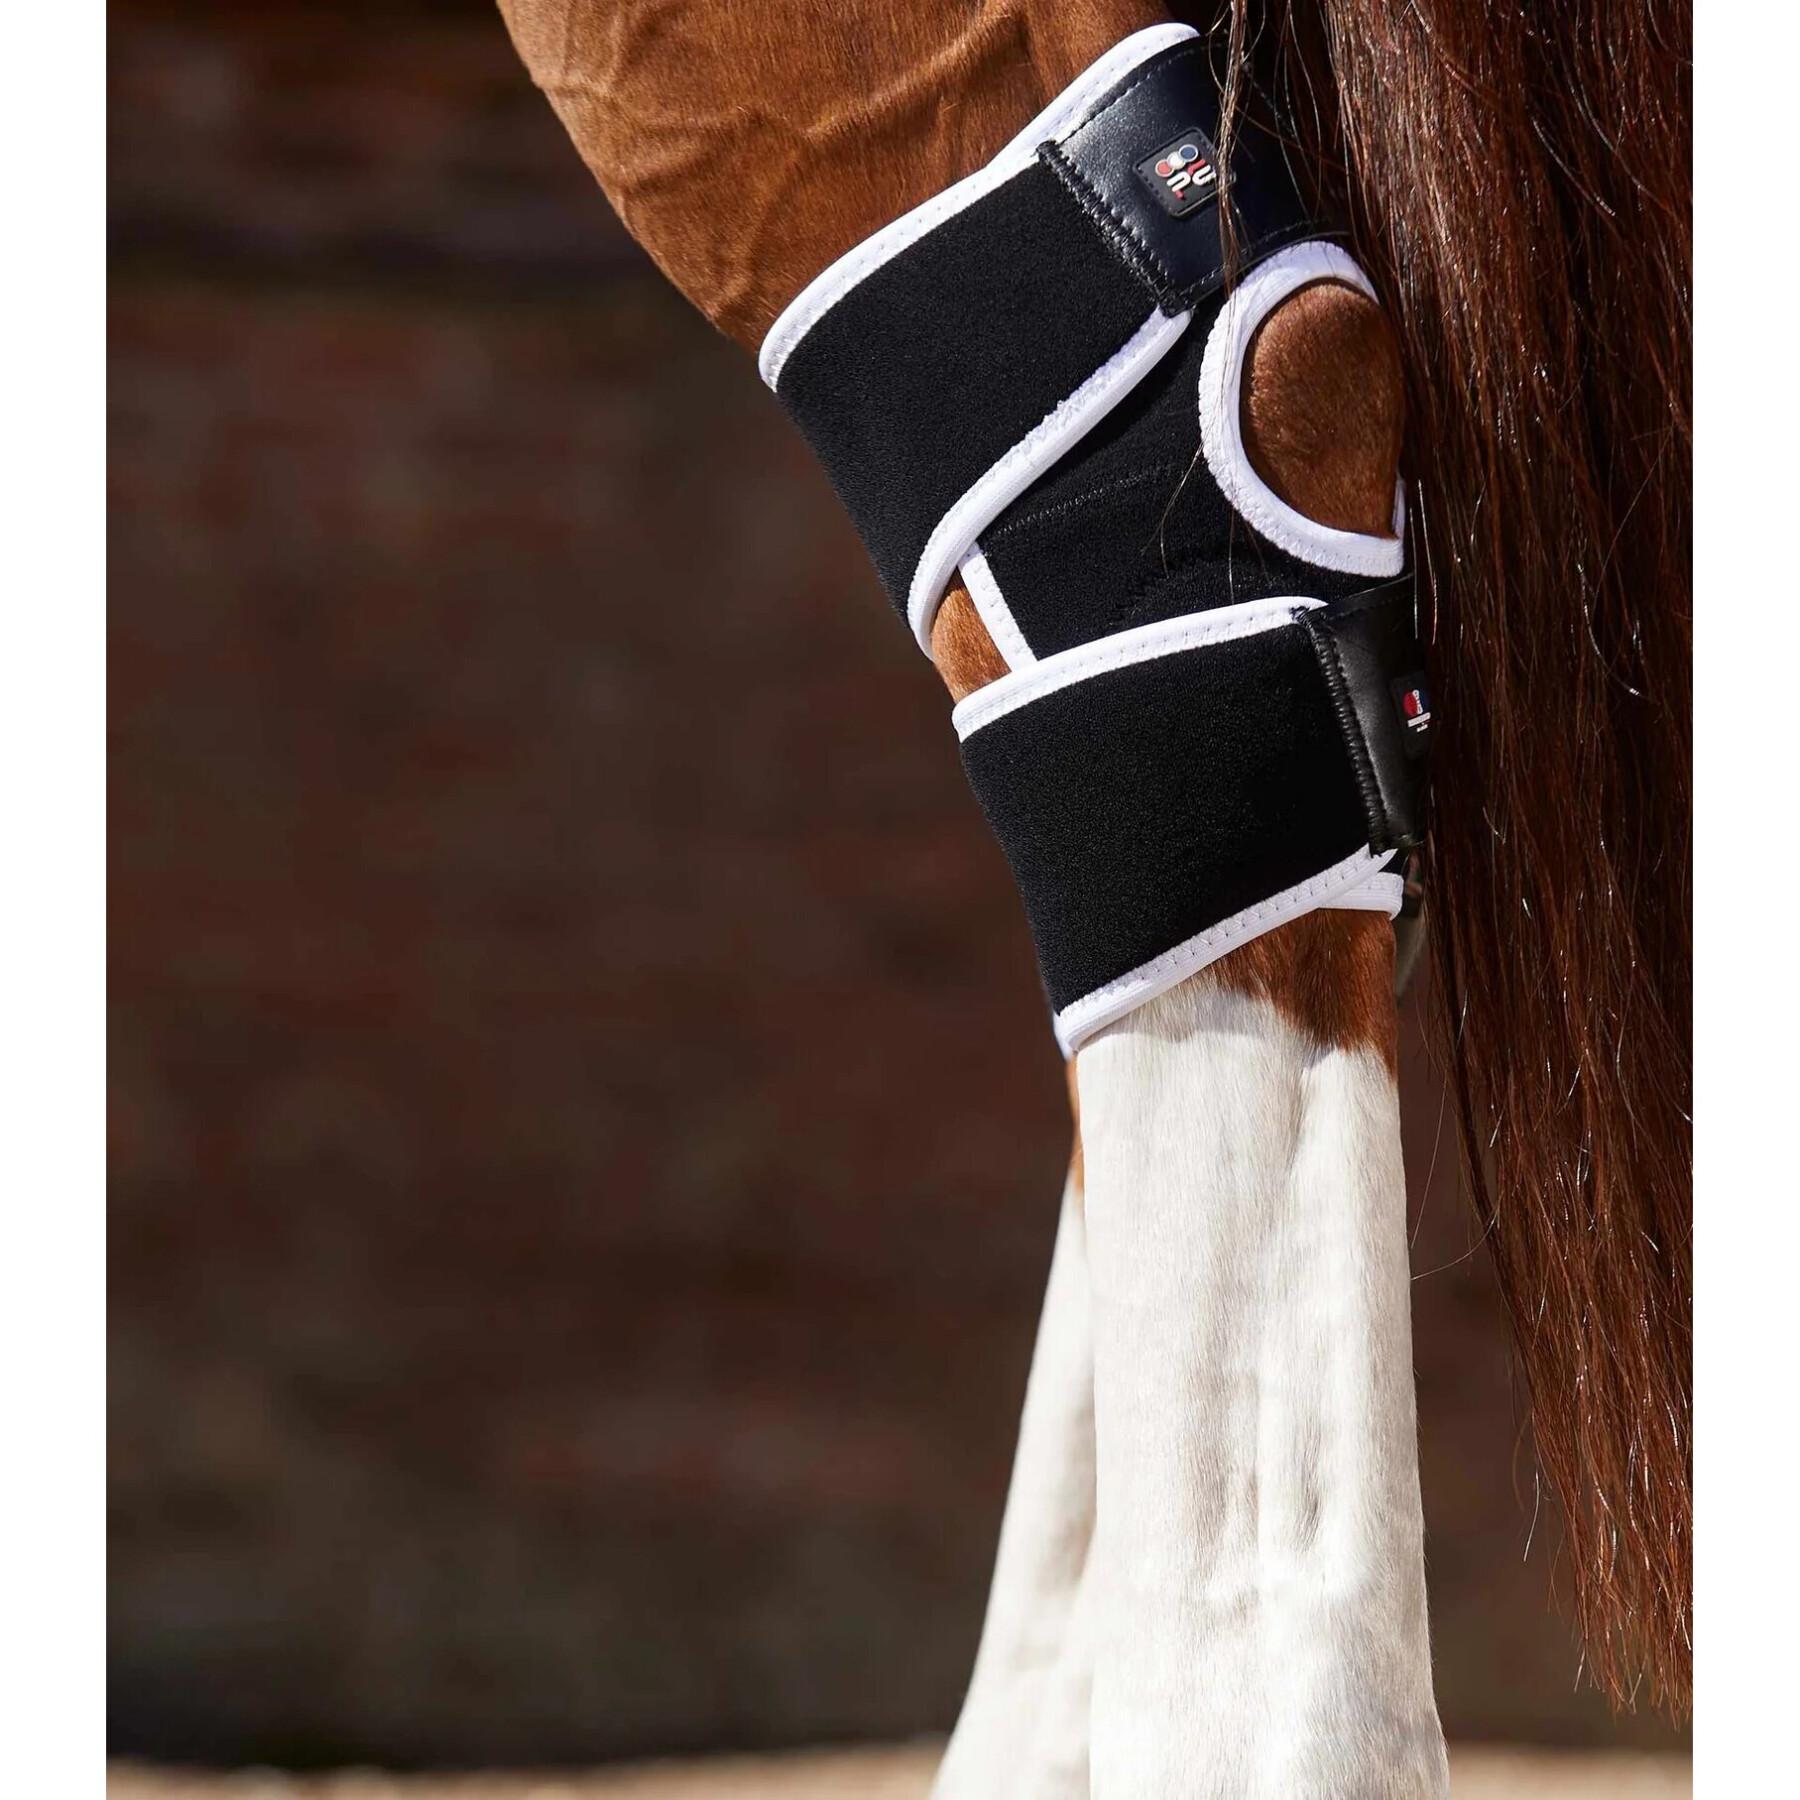 Ginocchiere magnetiche per cavalli Premier Equine Magni-Teque